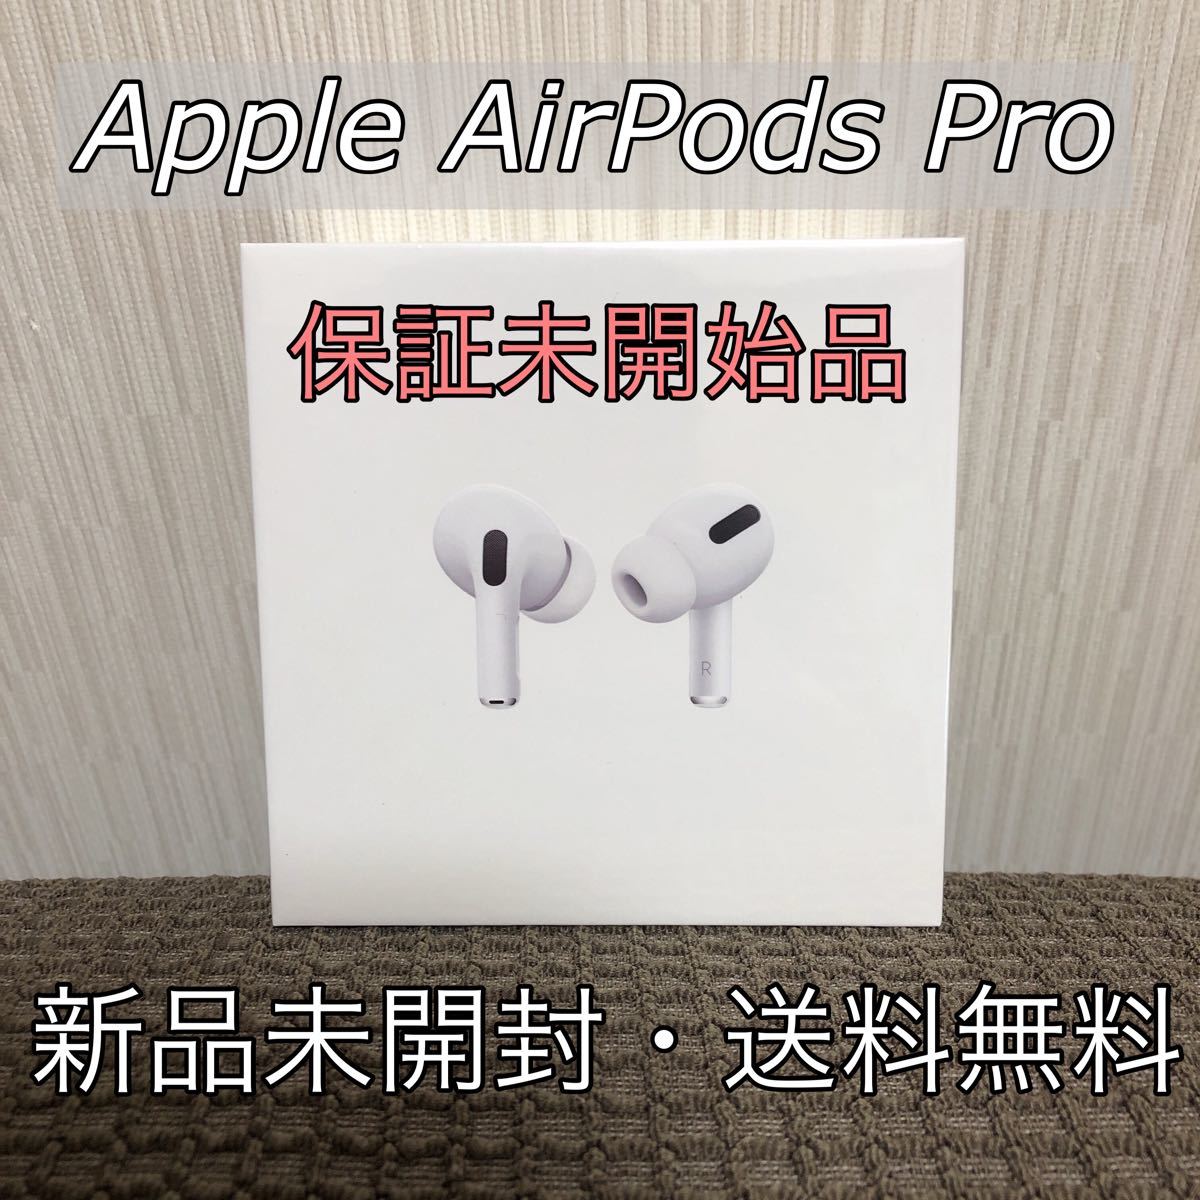 保証未開始品 Apple AirPods Pro MWP22J/A 本体 アップル ワイヤレス